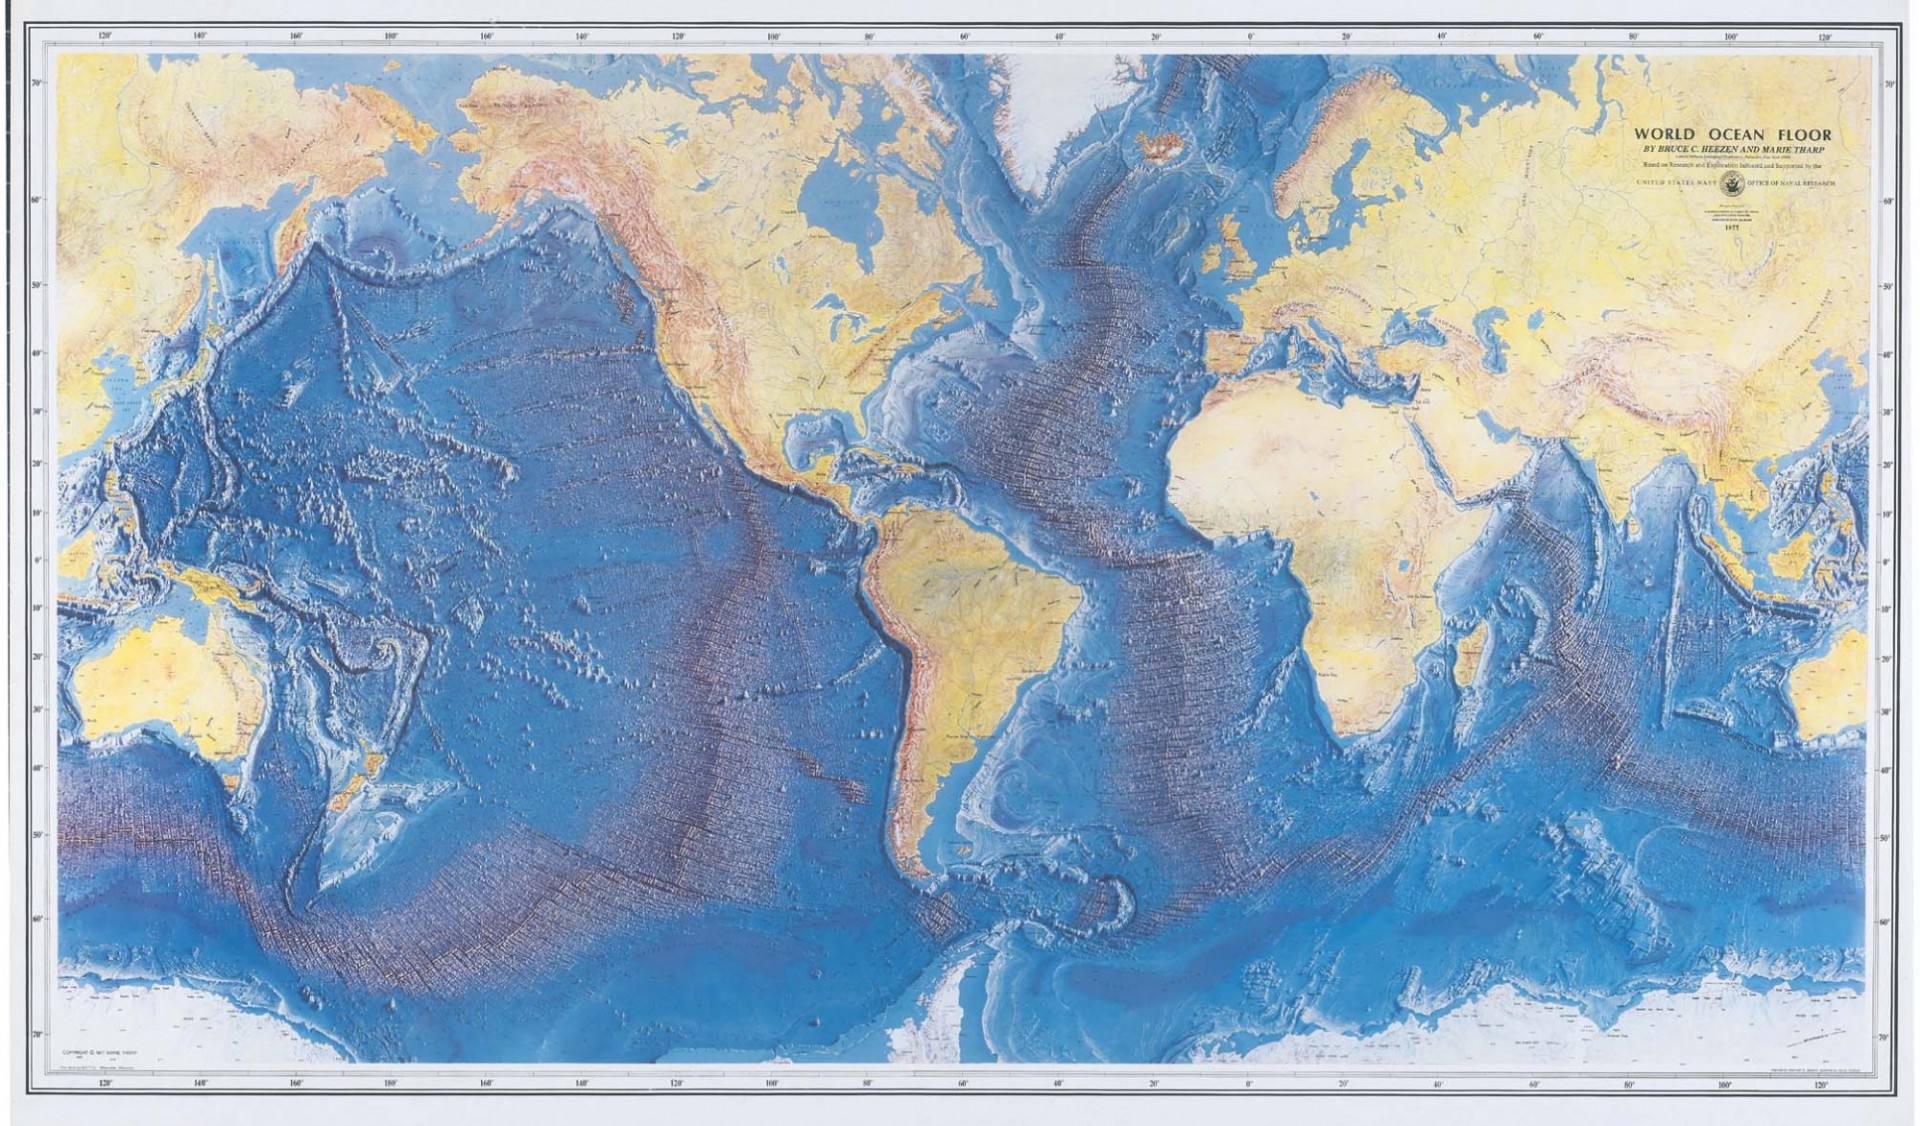 Heezen and Tharp Seafloor Map, 1977